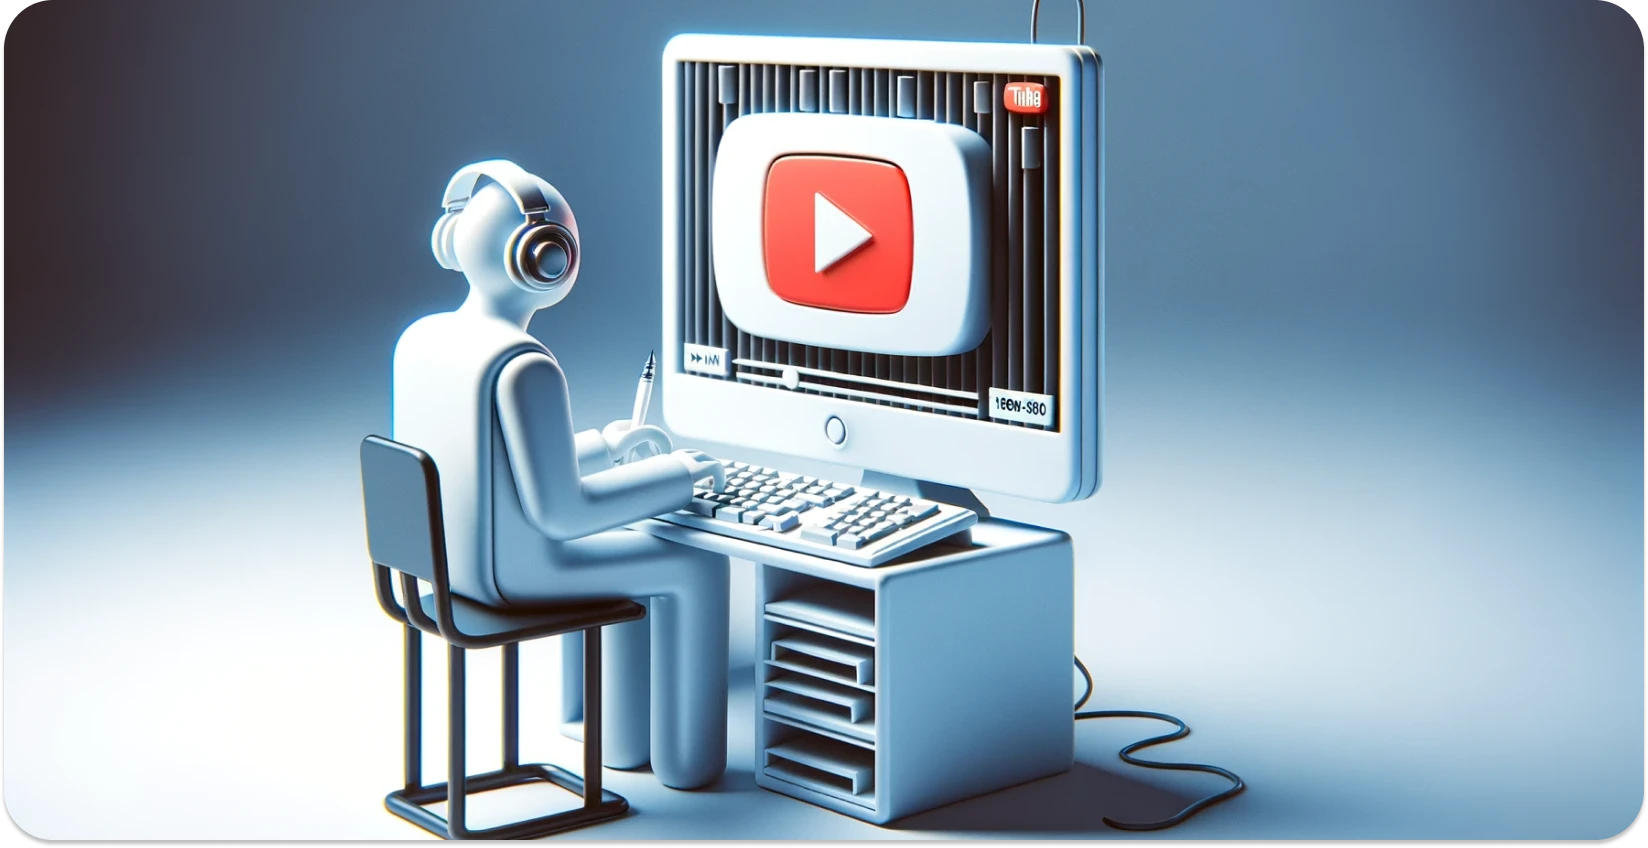 Стилизованная иллюстрация человека, использующего компьютер с интерфейсом YouTube, с акцентом на транскрипцию.